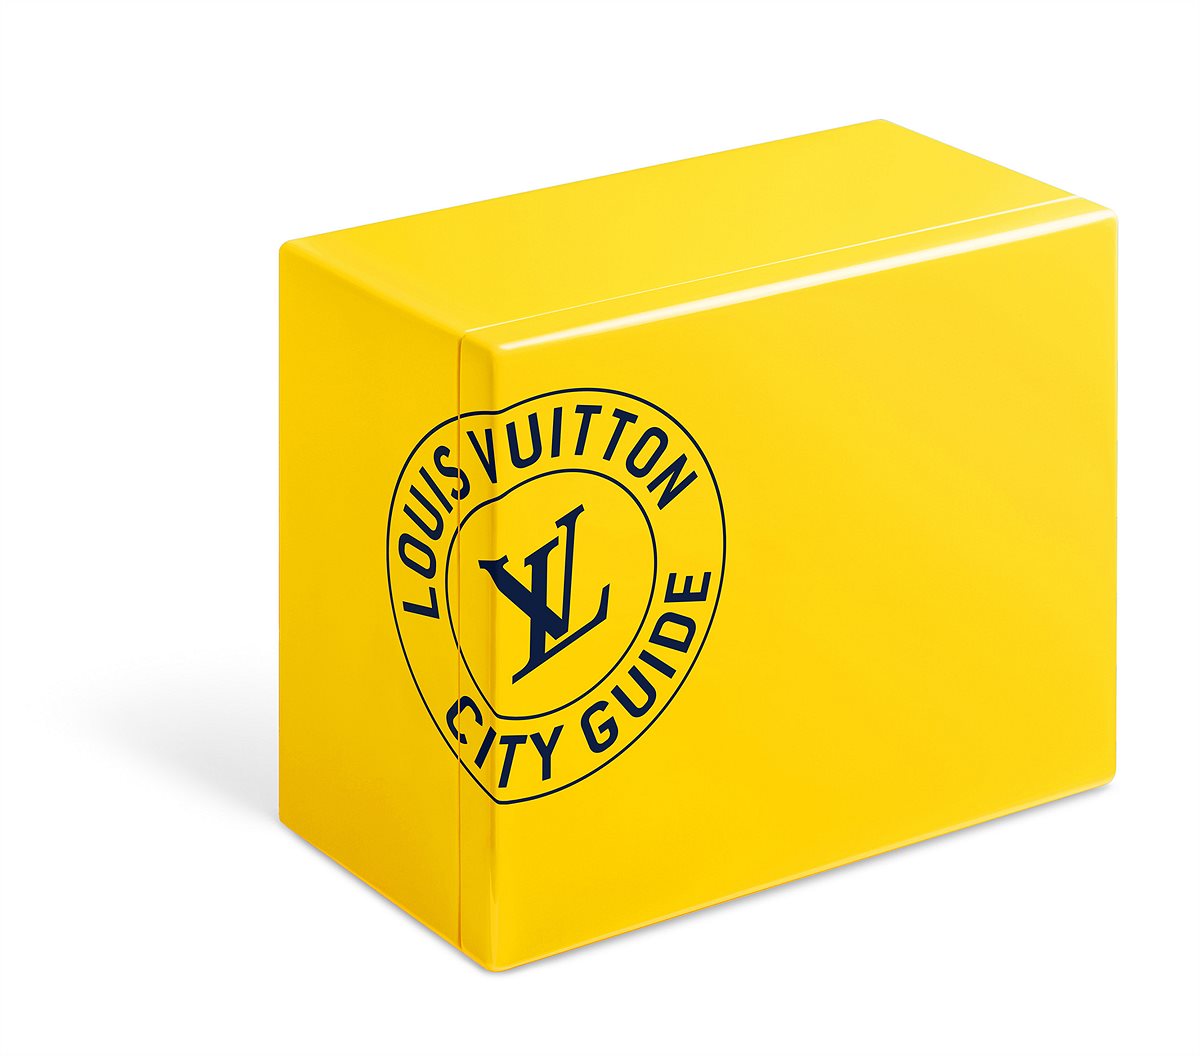 LOUIS VUITTON_City Guide Box Set_EUR 600_Rome Yellow